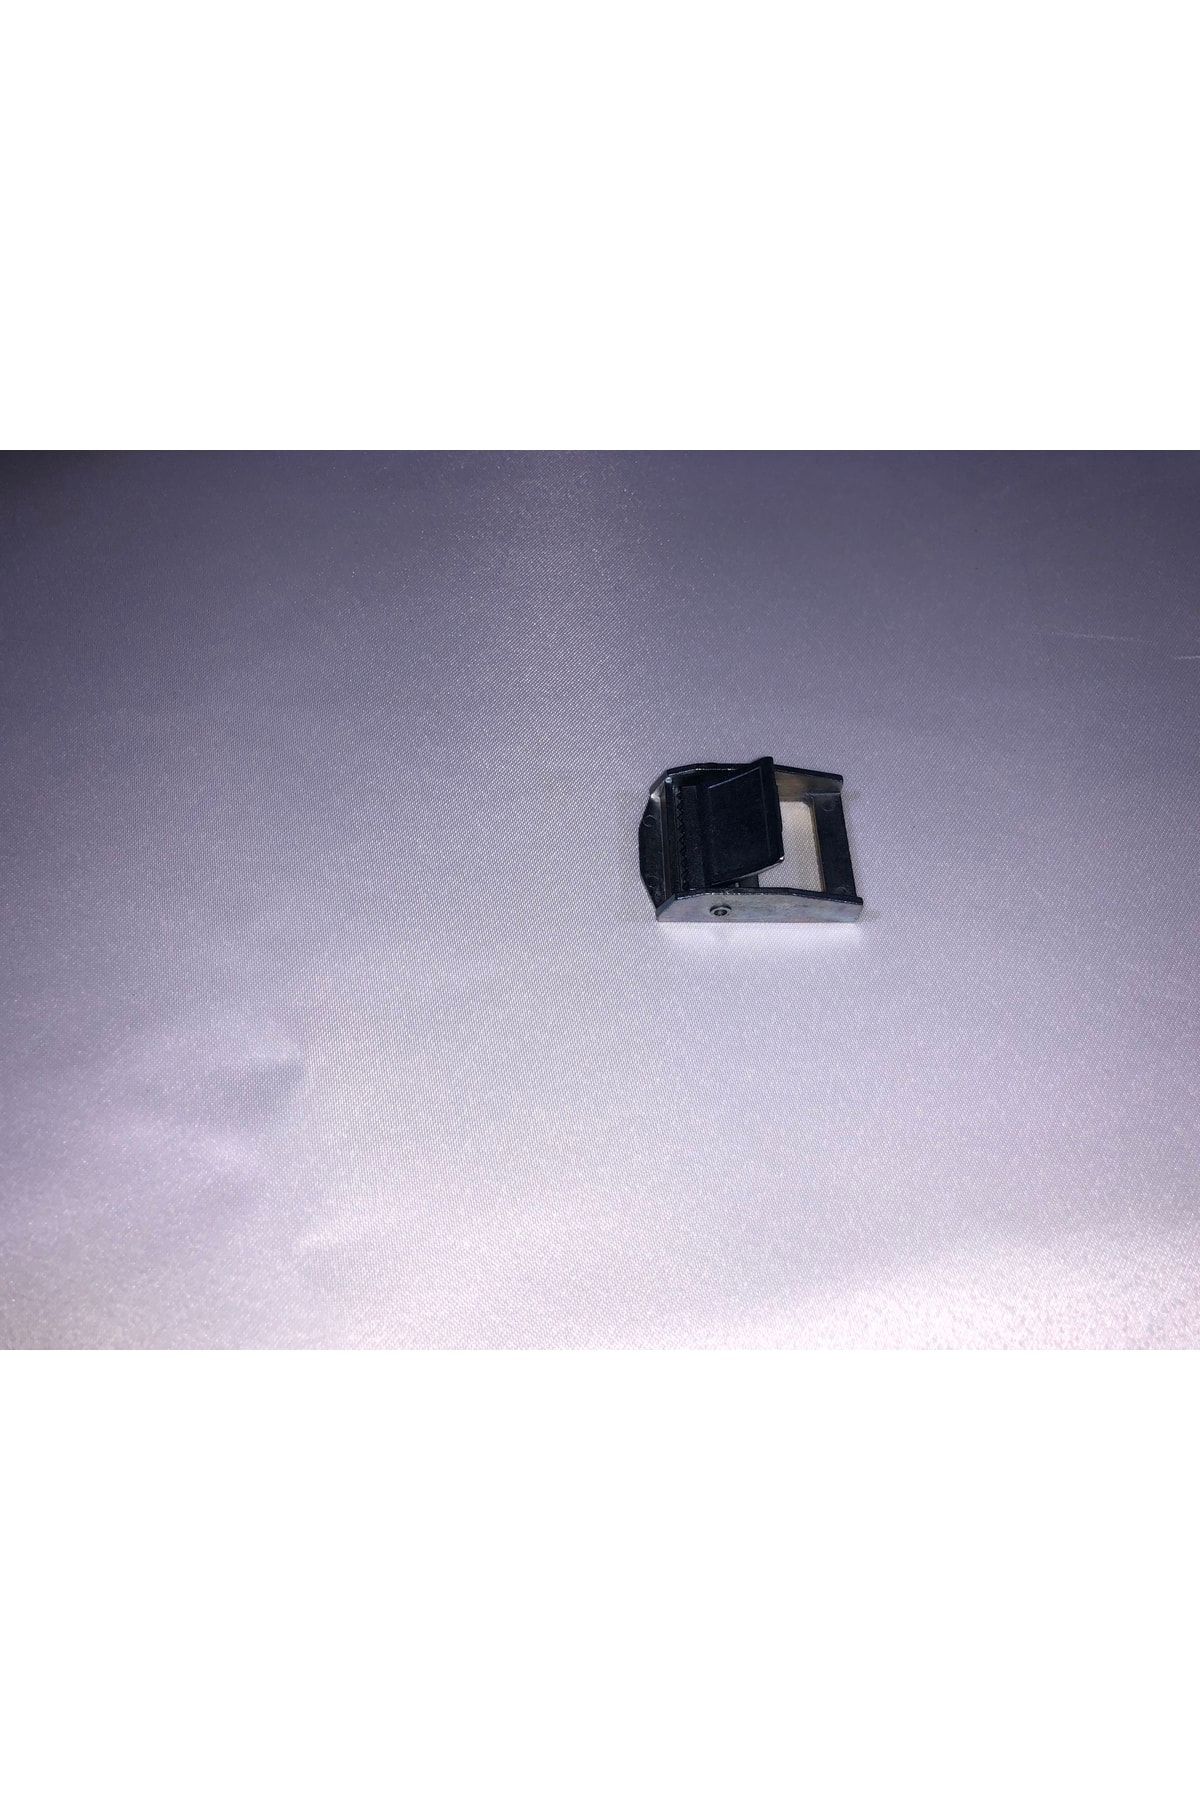 Üçyıldız X Zapanzet Zamak 25mm Mini Mandal Gerdirme Tokası 2'li Paket